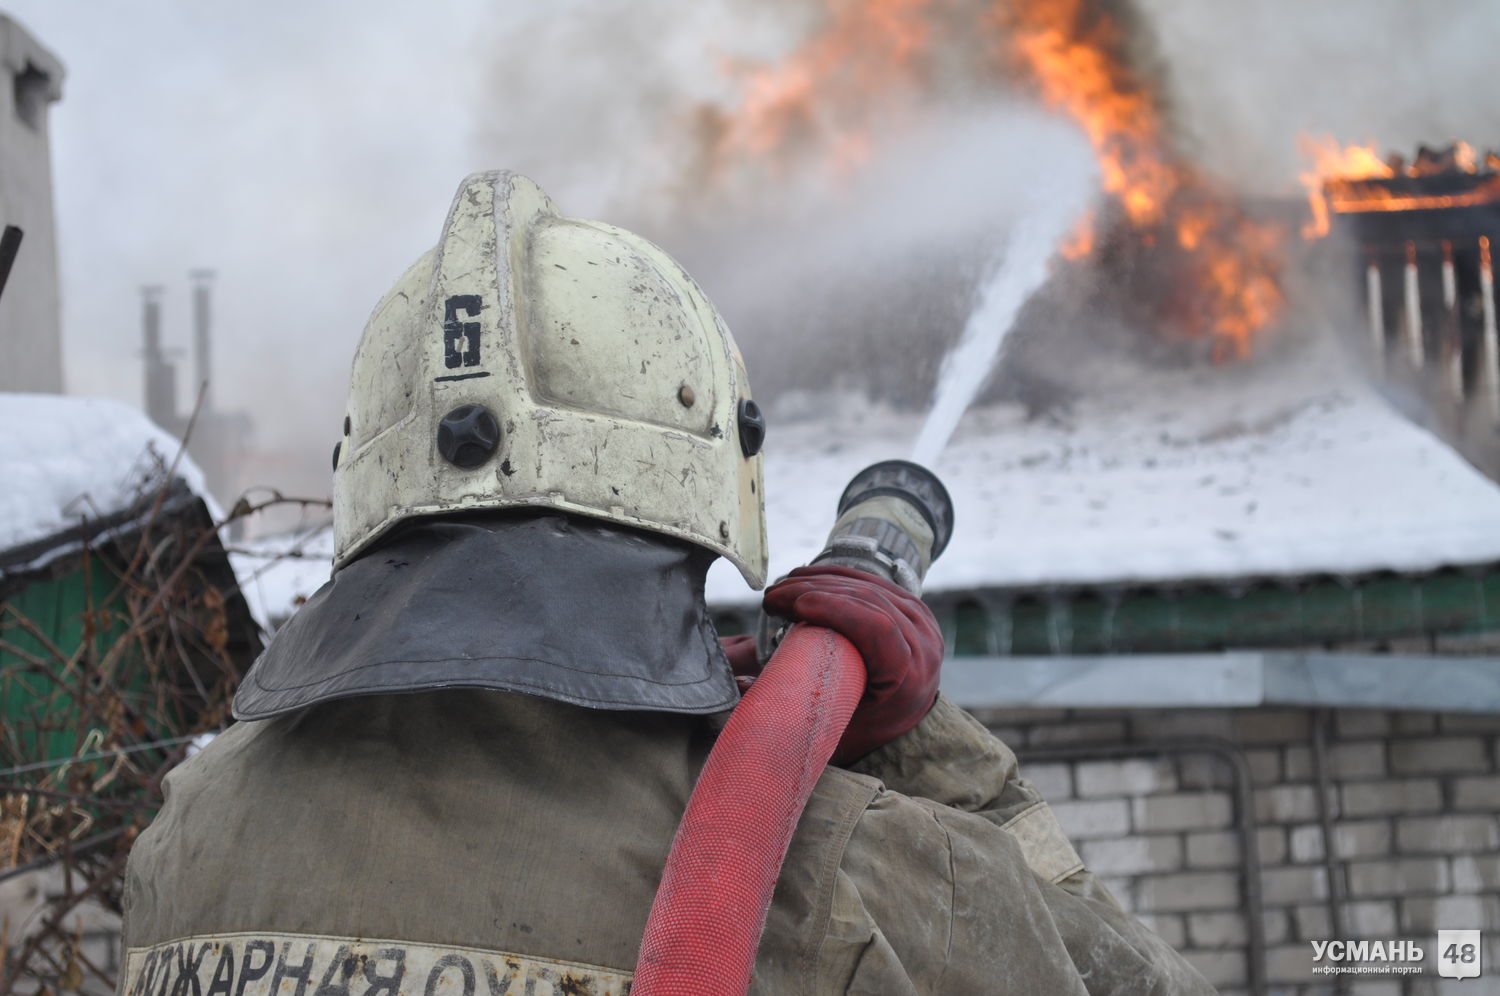 В селе Новоуглянка Усманского района пожар в частном доме унёс человеческую жизнь